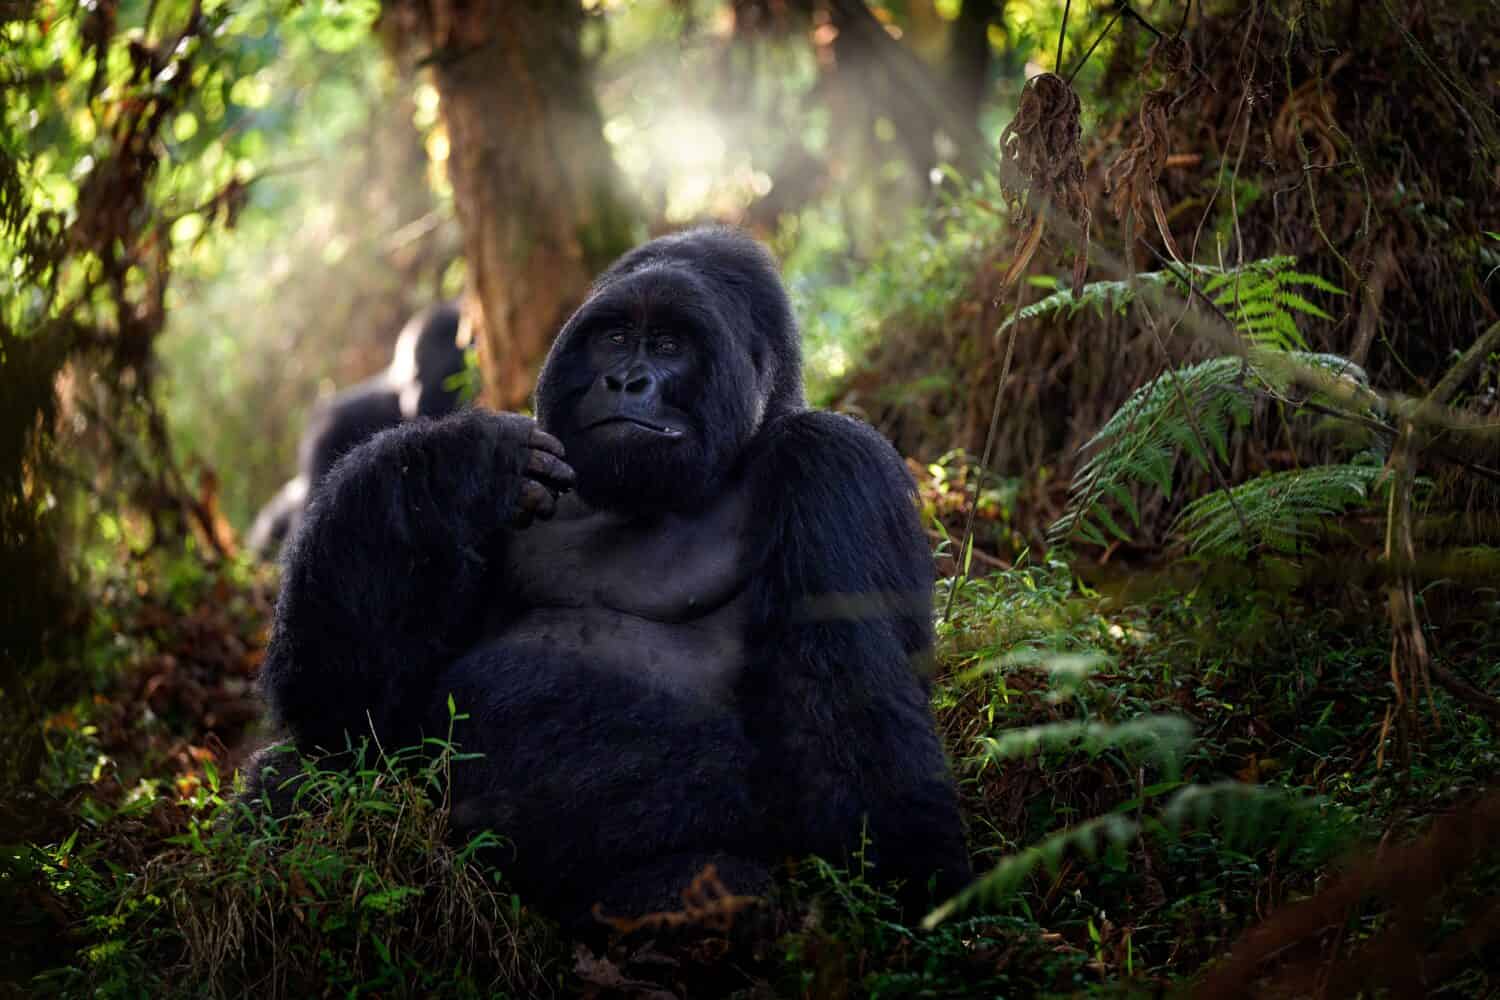 Gorilla di montagna, parco nazionale di Mgahinga in Uganda.  Foto ravvicinata di una grande scimmia silverback nera selvaggia nella foresta, Africa.  Natura della fauna selvatica.  Mammifero nella vegetazione verde.  Gorilla seduto nella foresta,